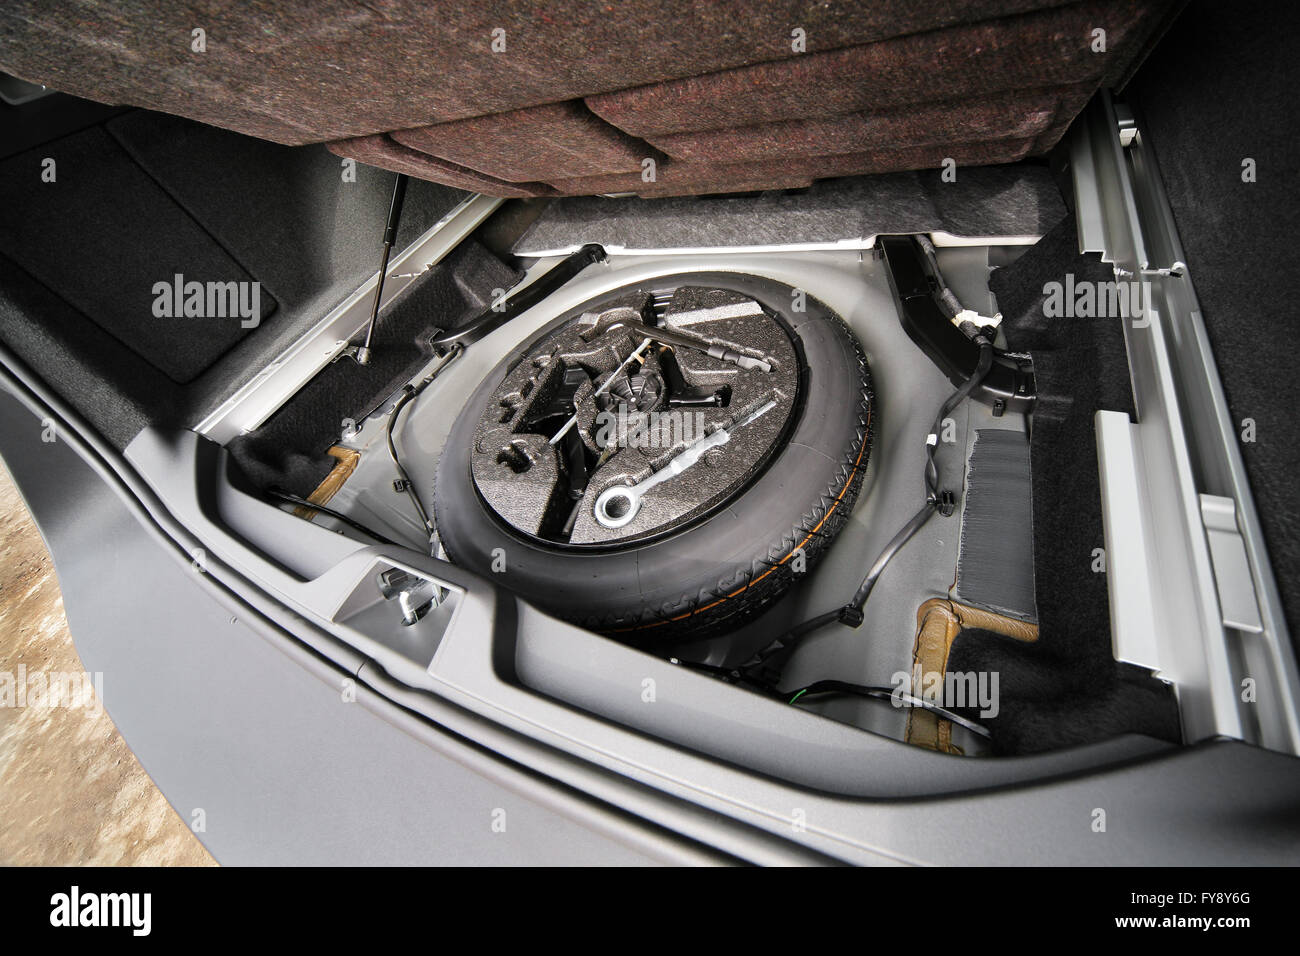 Reserverad im Kofferraum eines modernen Autos. Wagenheber anheben und Ersatzreifen  hinten im Fahrzeug Stockfotografie - Alamy